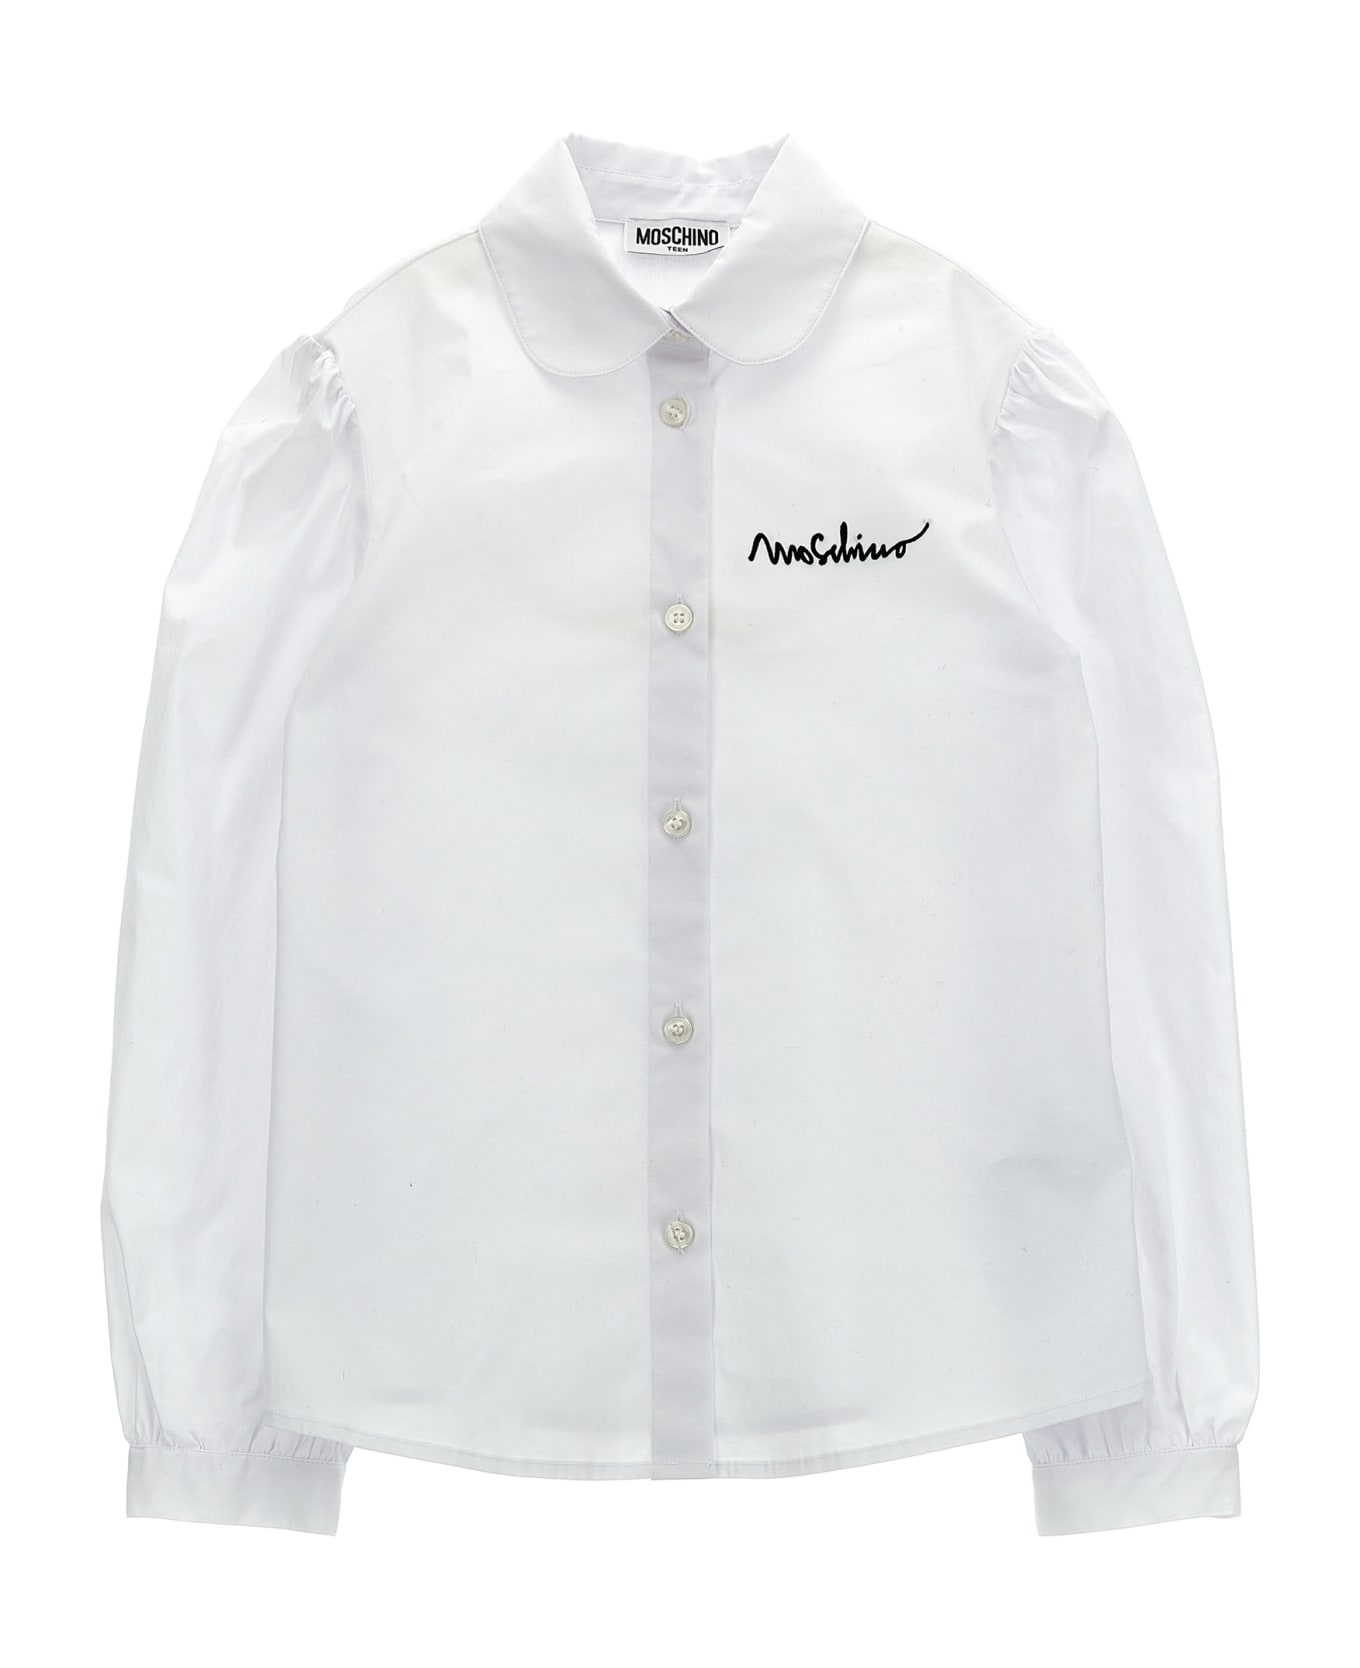 Moschino Logo Dress And Shirt - White/Black